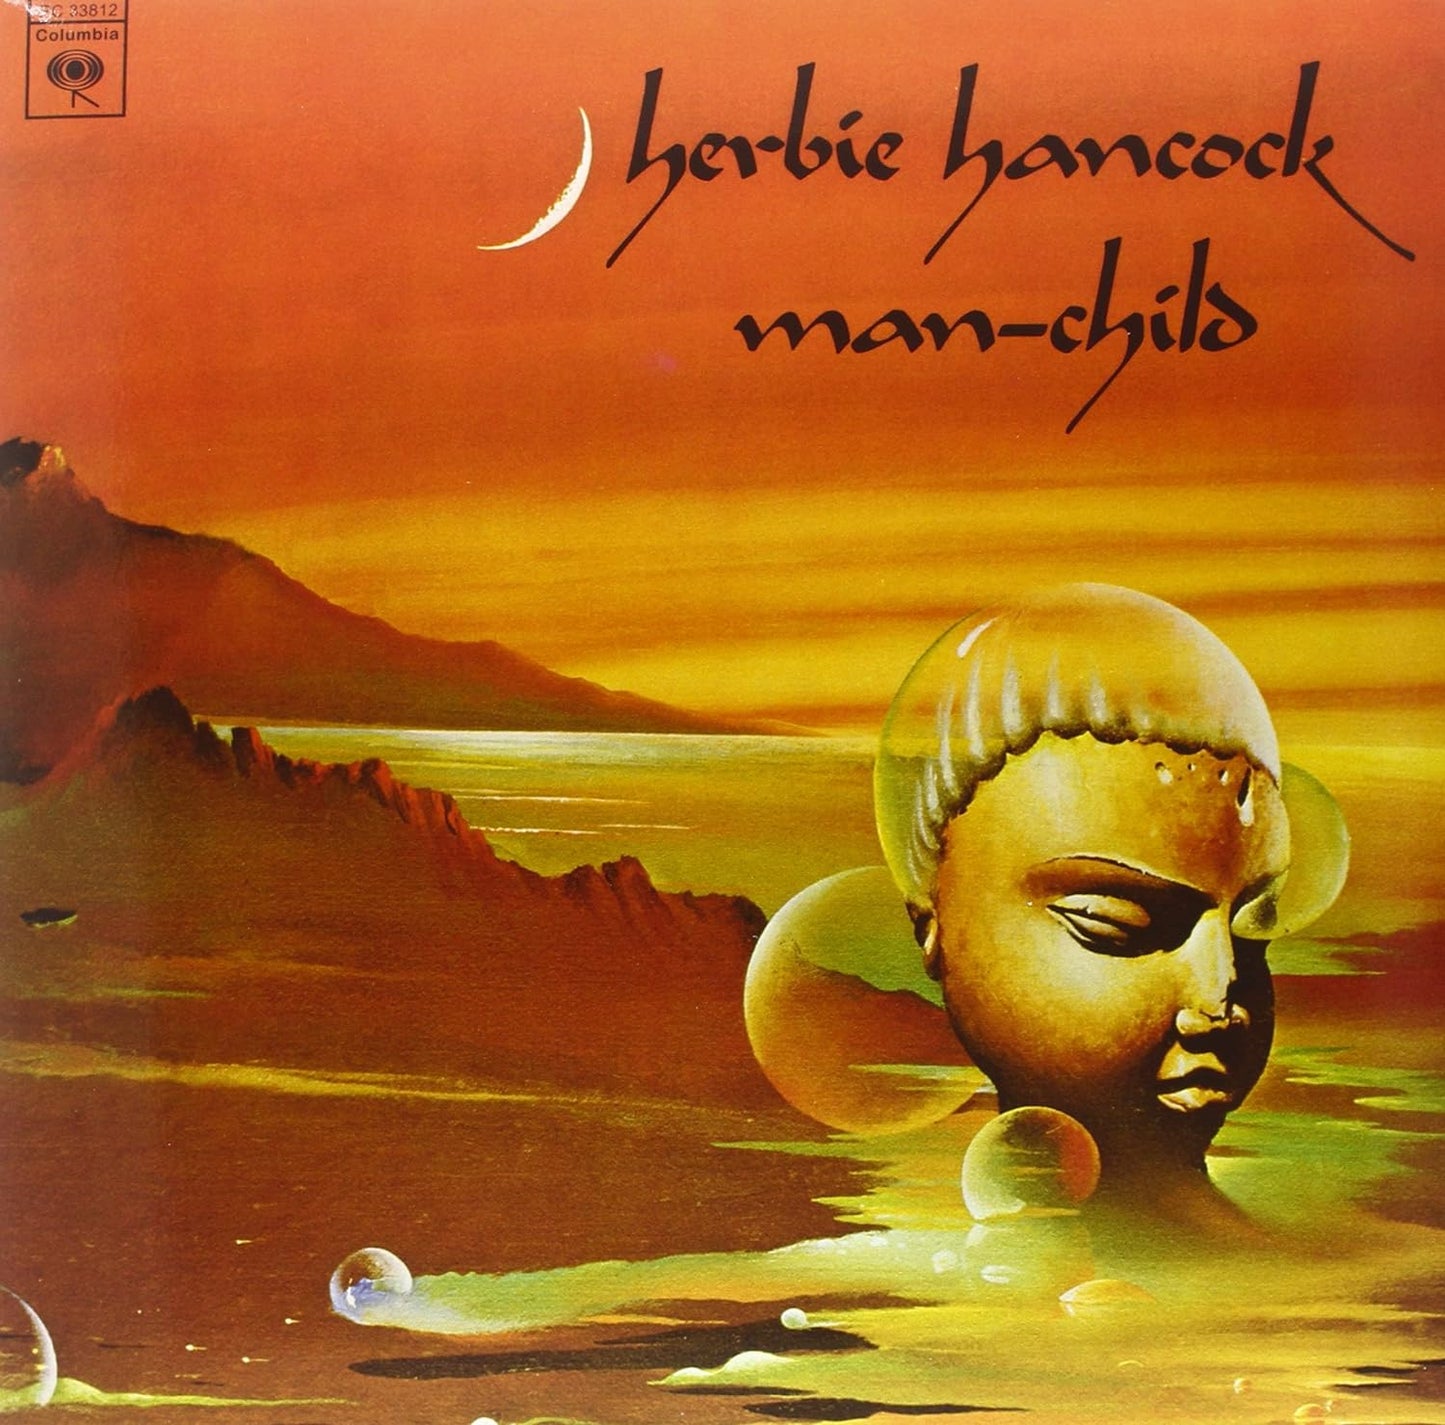 Herbie Hancock - Man-Child (Vinile 180gr.)